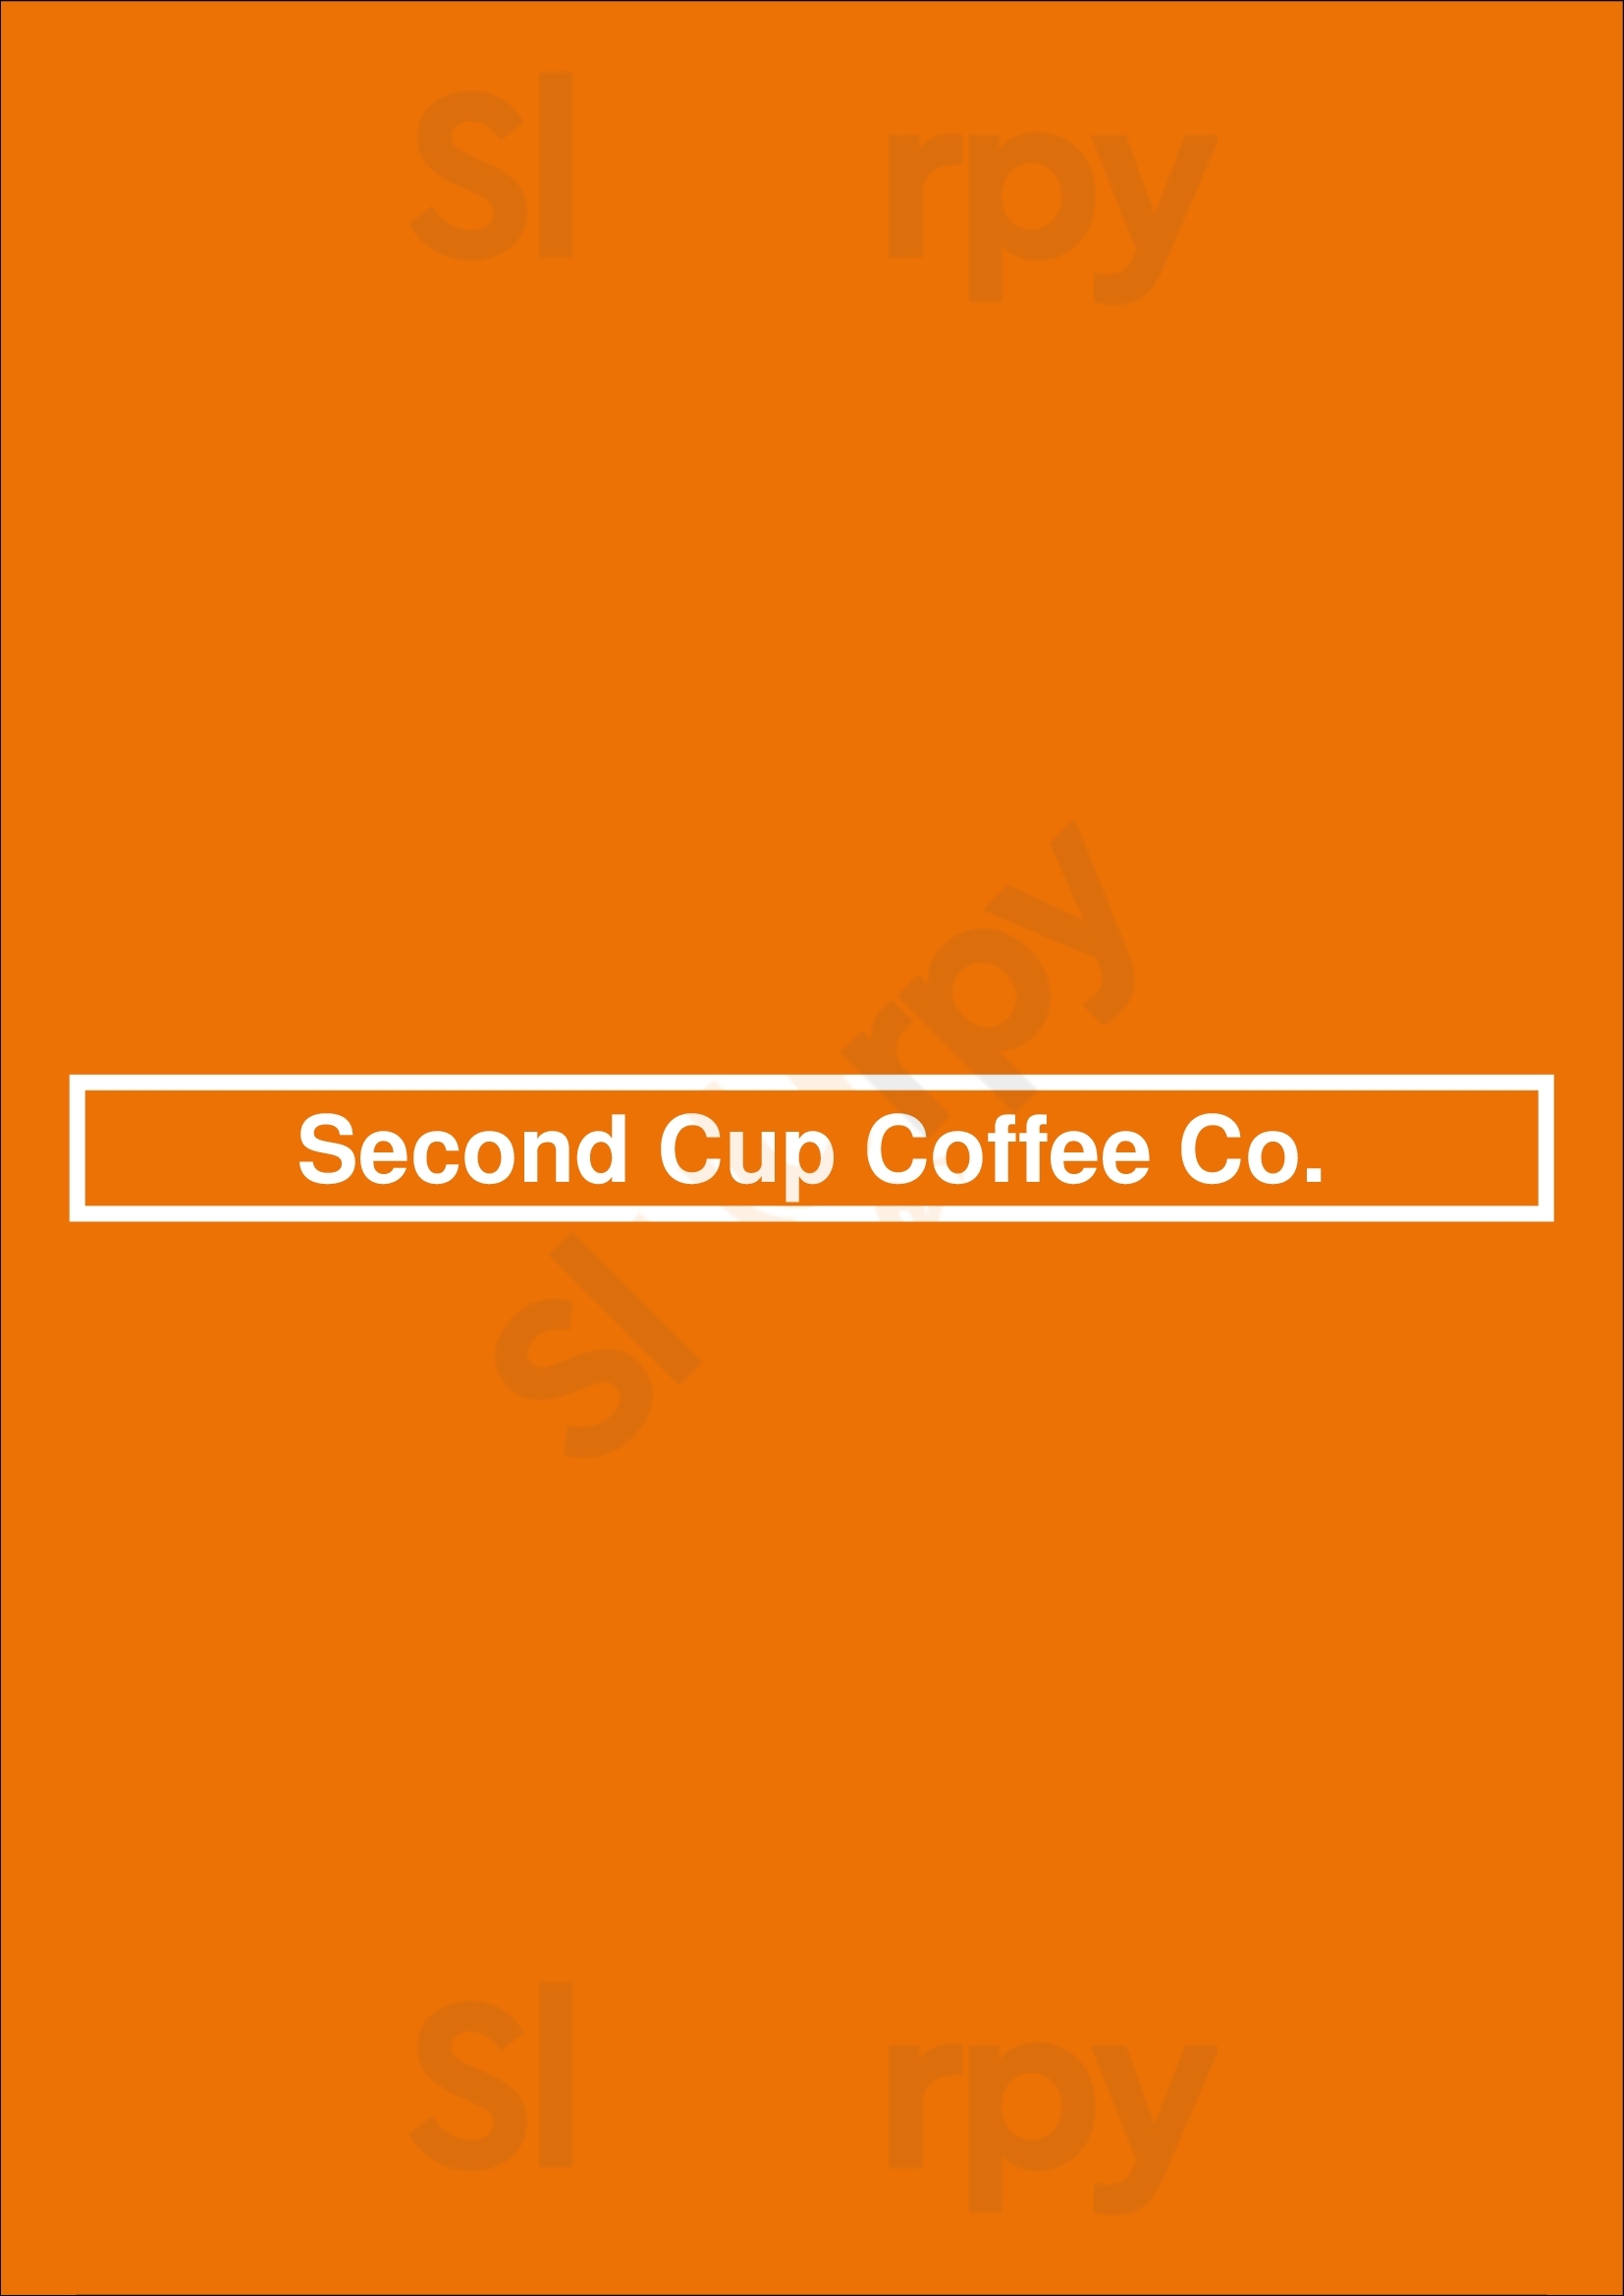 Second Cup Coffee Co. Regina Menu - 1